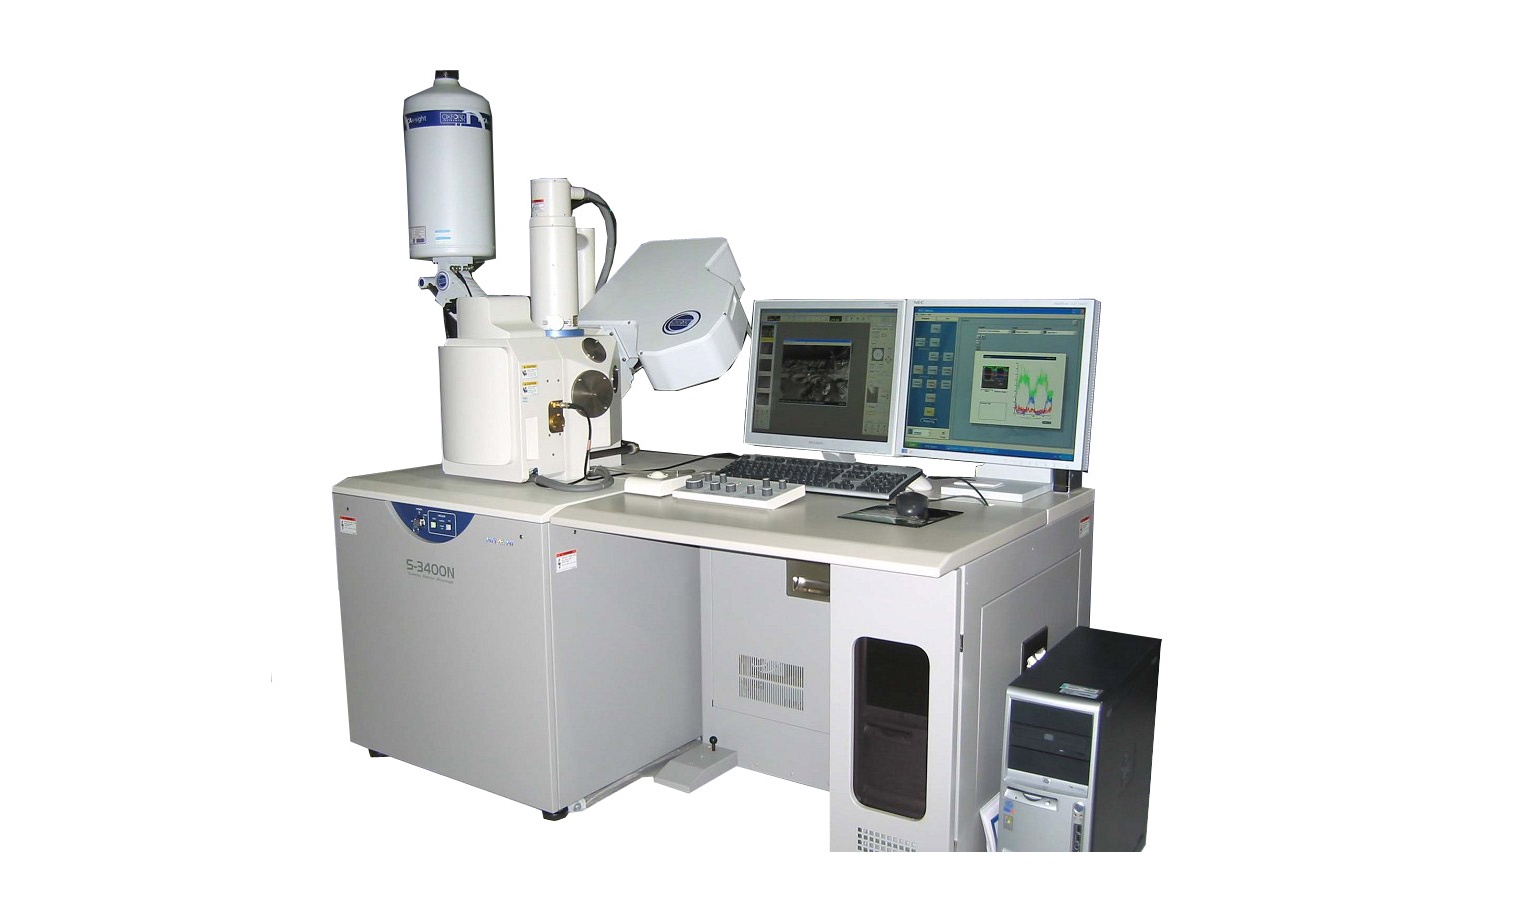 上海微系统与信息技术研究所扫描电子显微镜采购中标公告